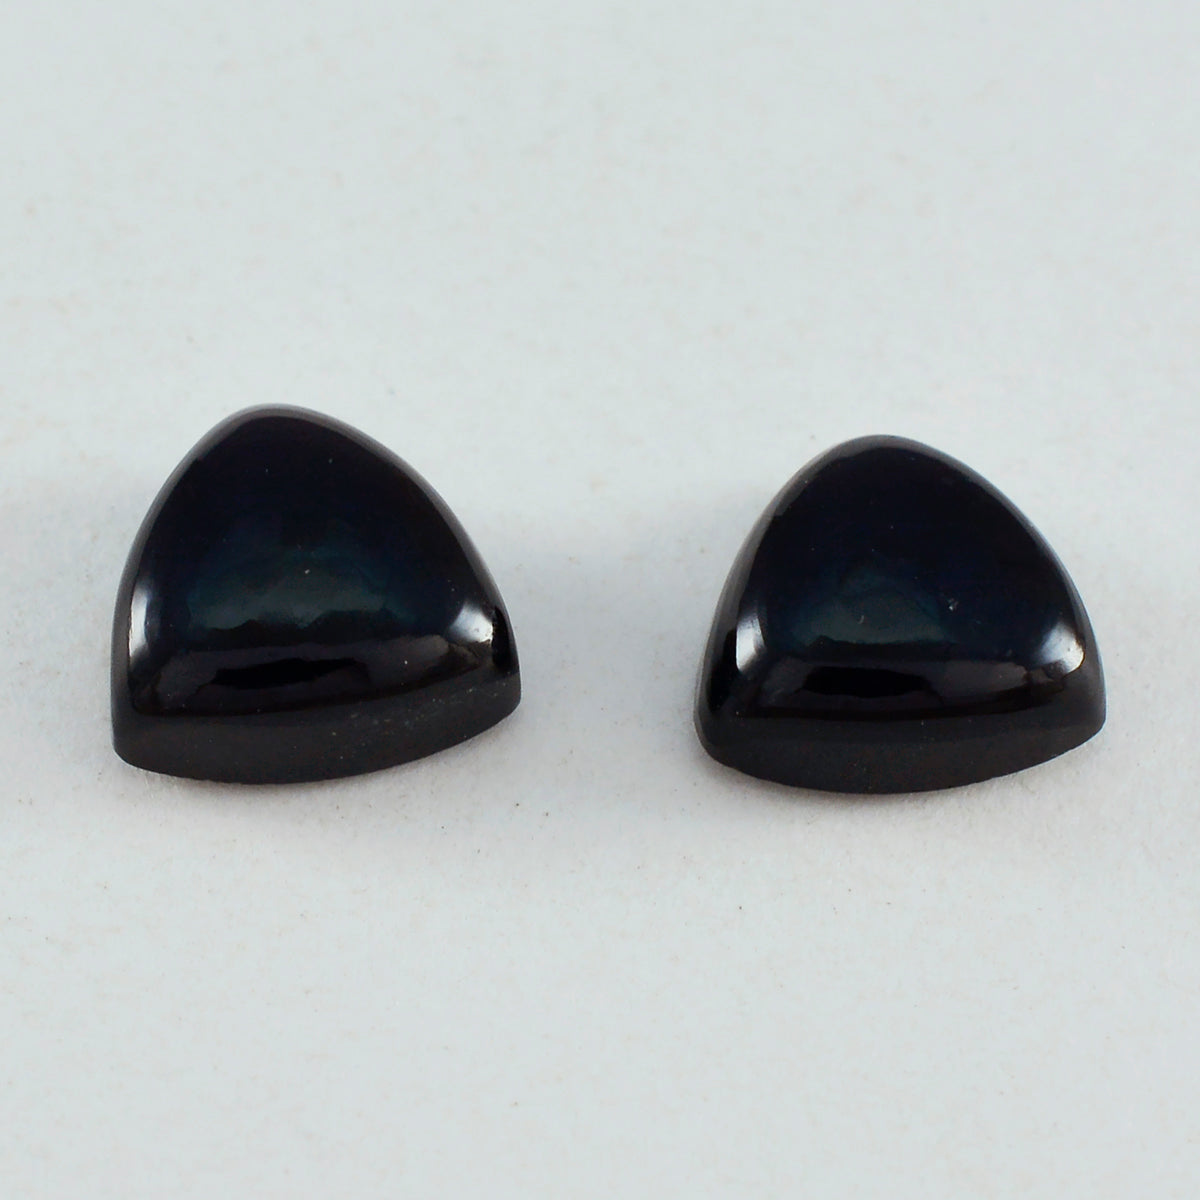 Riyogems 1 cabujón de ónix negro, 0.551 x 0.551 in, forma de trillón, hermosa calidad, piedra preciosa suelta